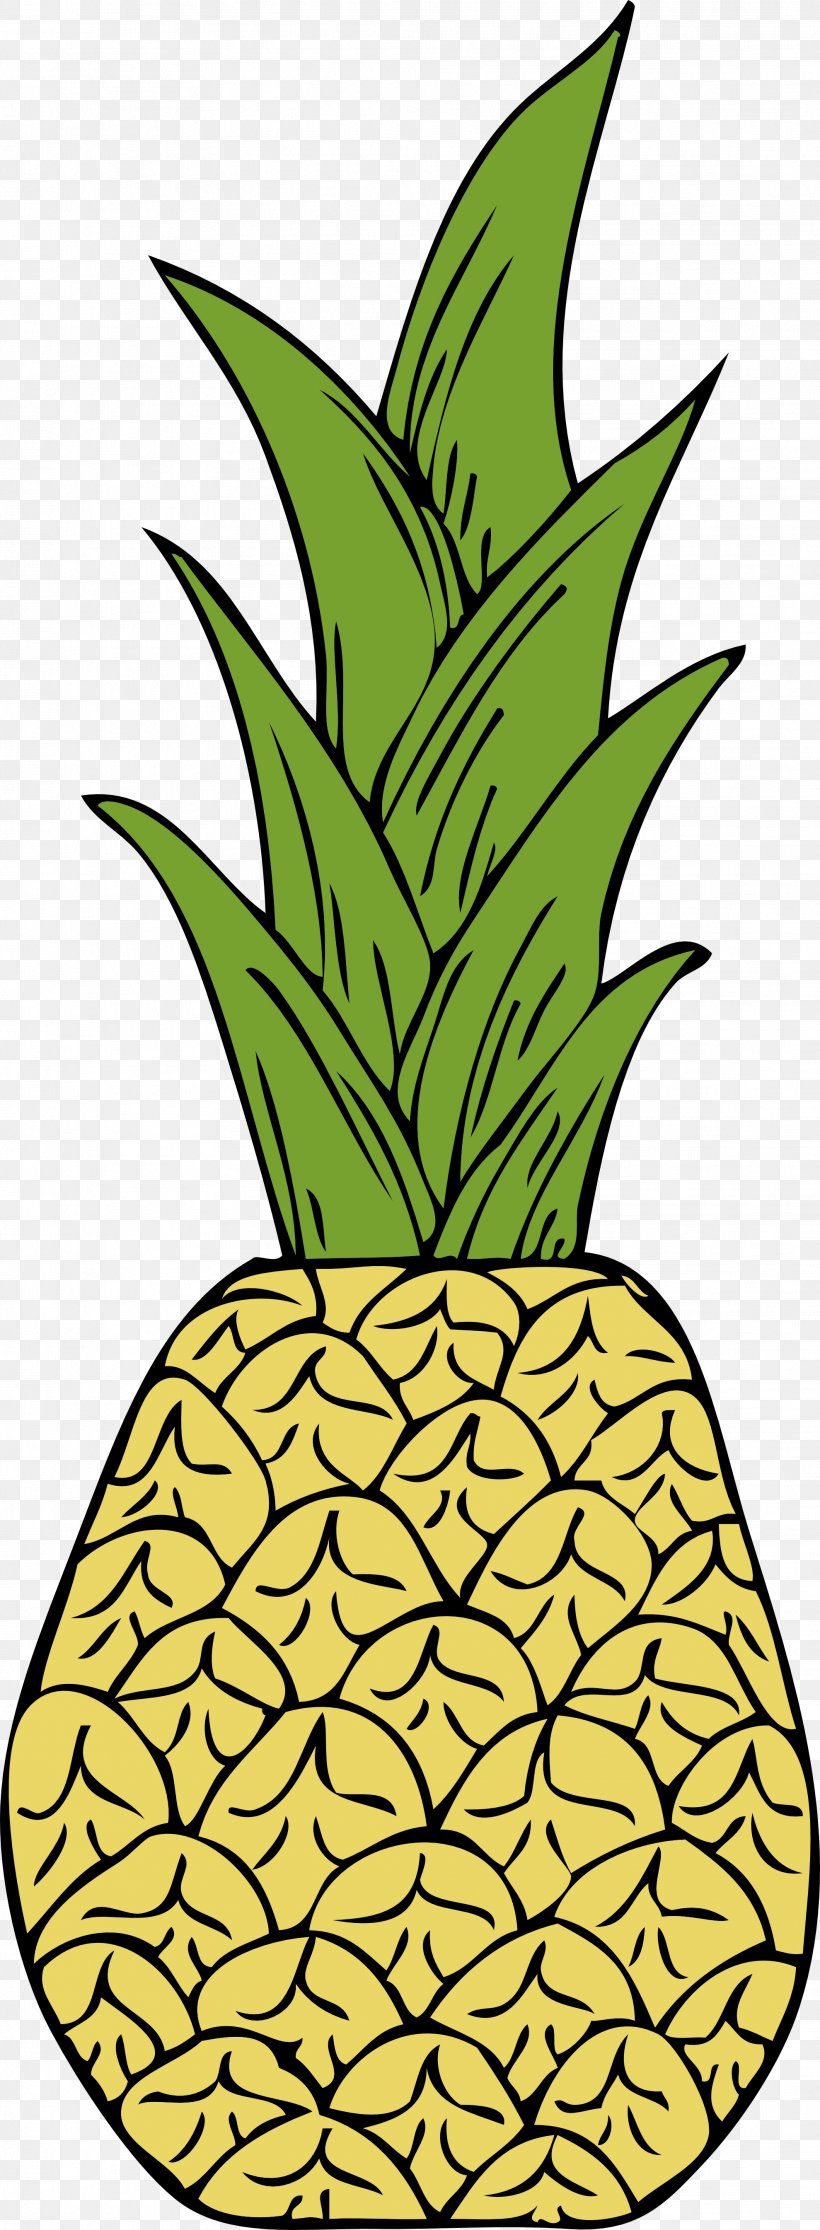 Pineapple Tart Pineapple Bun Pineapple Cake Fruit Salad, PNG, 1979x5383px, Pineapple Tart, Ananas, Artwork, Drawing, Flowering Plant Download Free